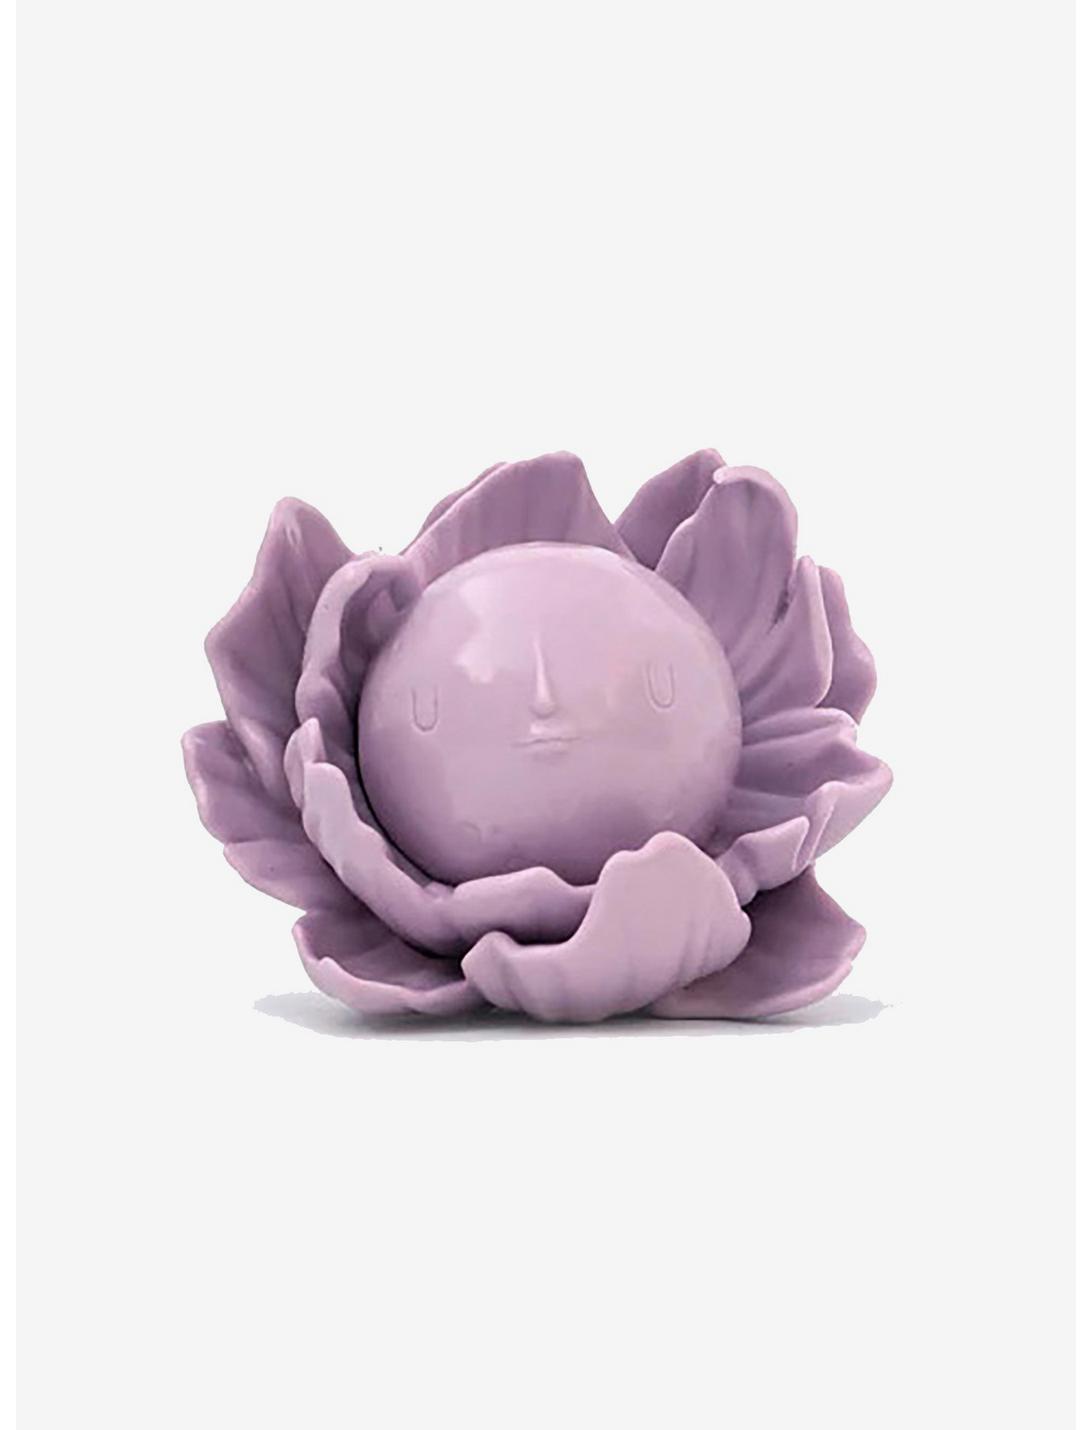 Yoskay Yamamoto Chibi Moon Flower Lavender Figure by Munky King, , hi-res